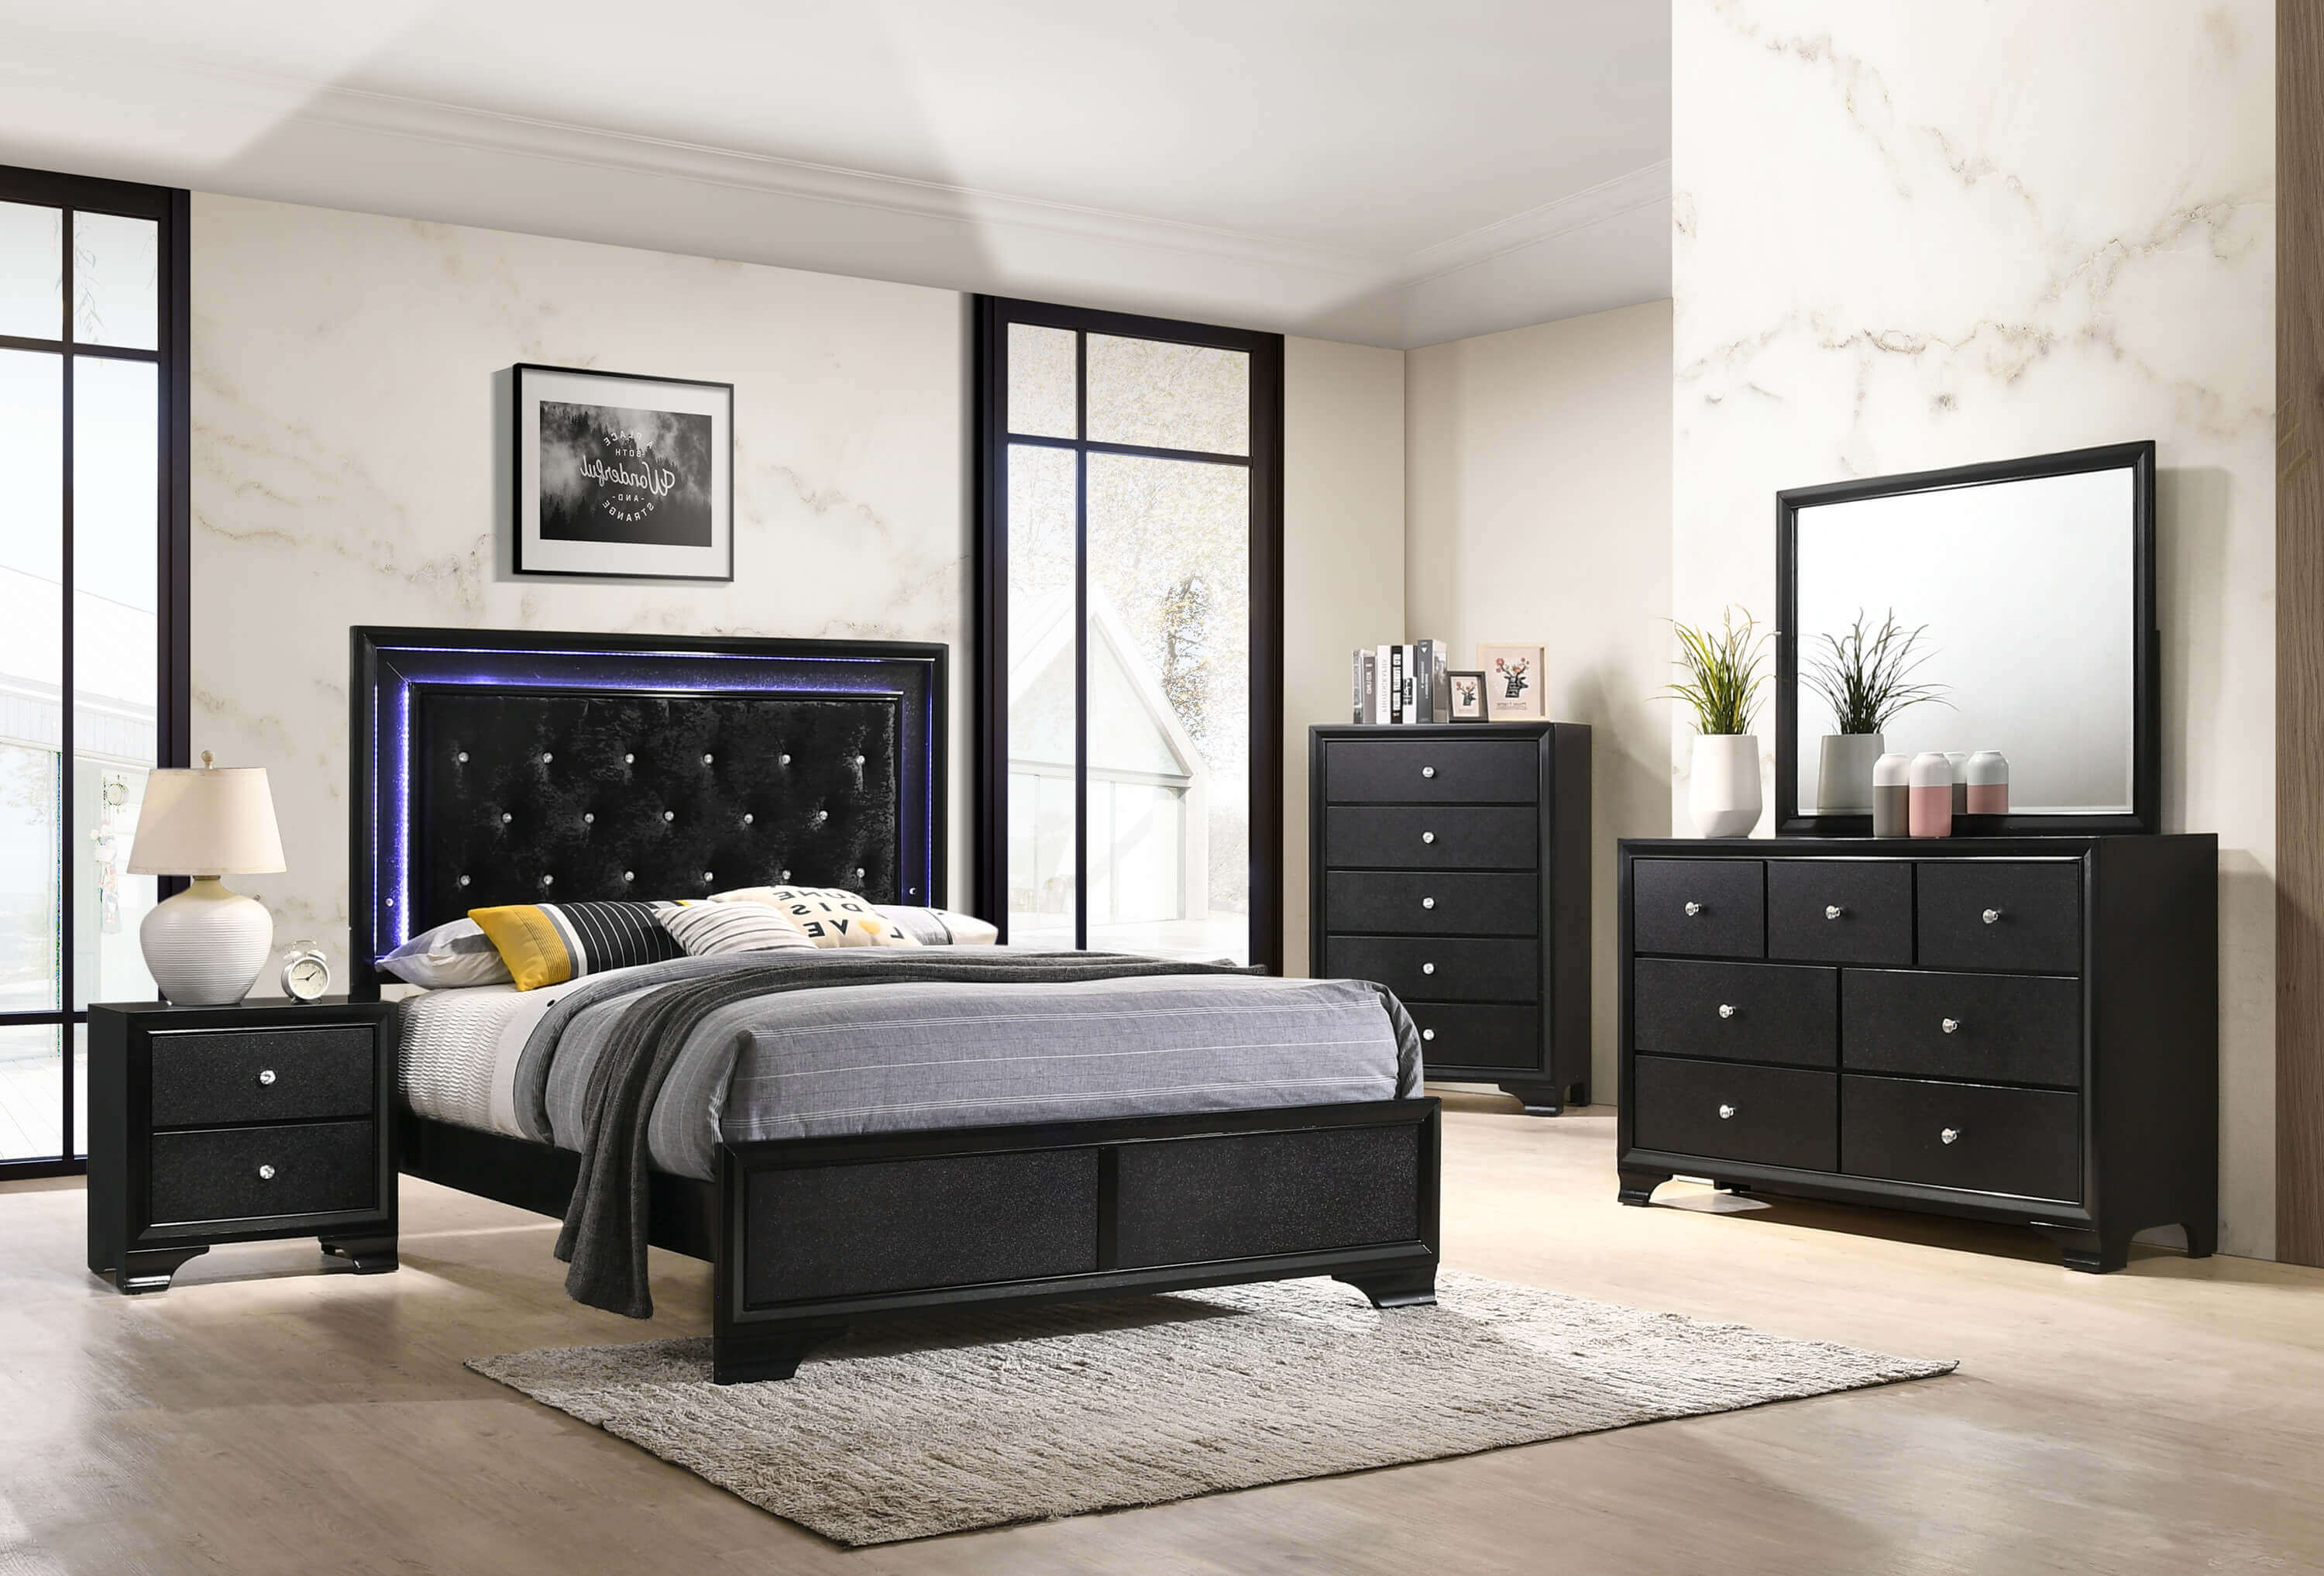 Micah Black Led Bedroom Furniture Sets Urban Furniture Outlet,Craftsman Style Bedroom Furniture